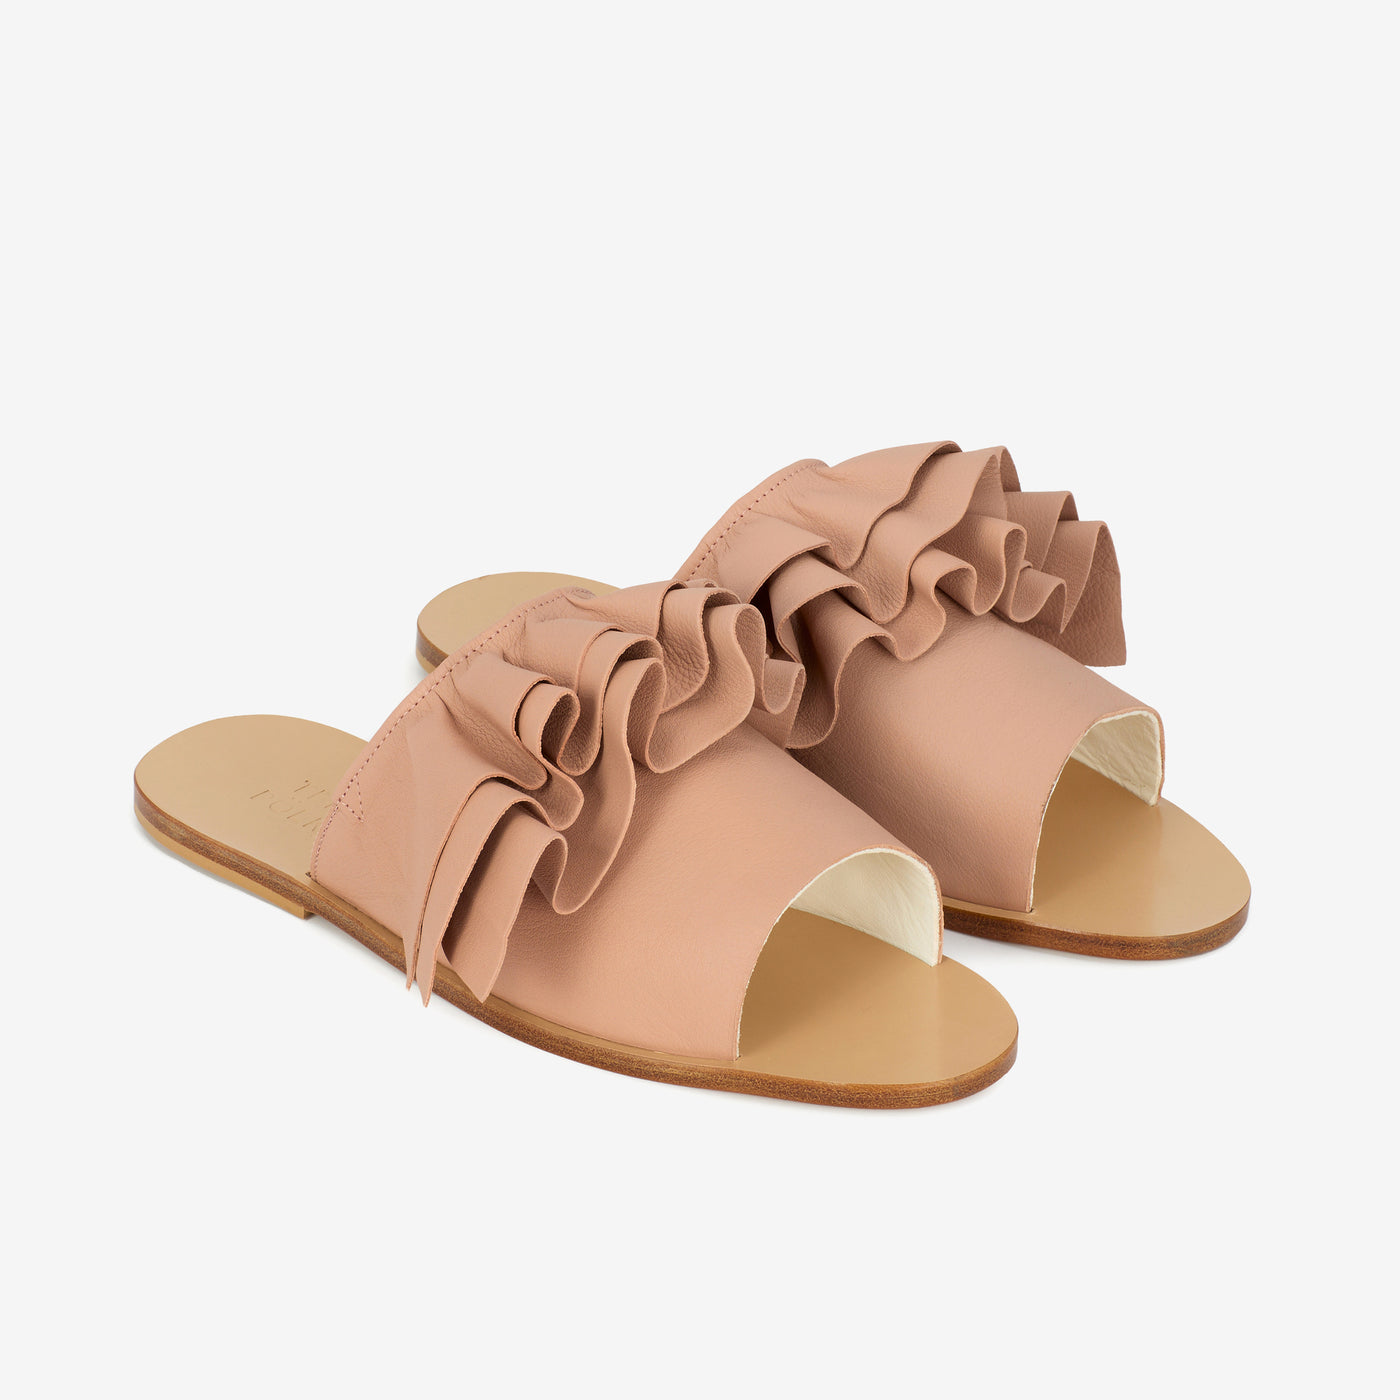 Fringe sandal pink clay